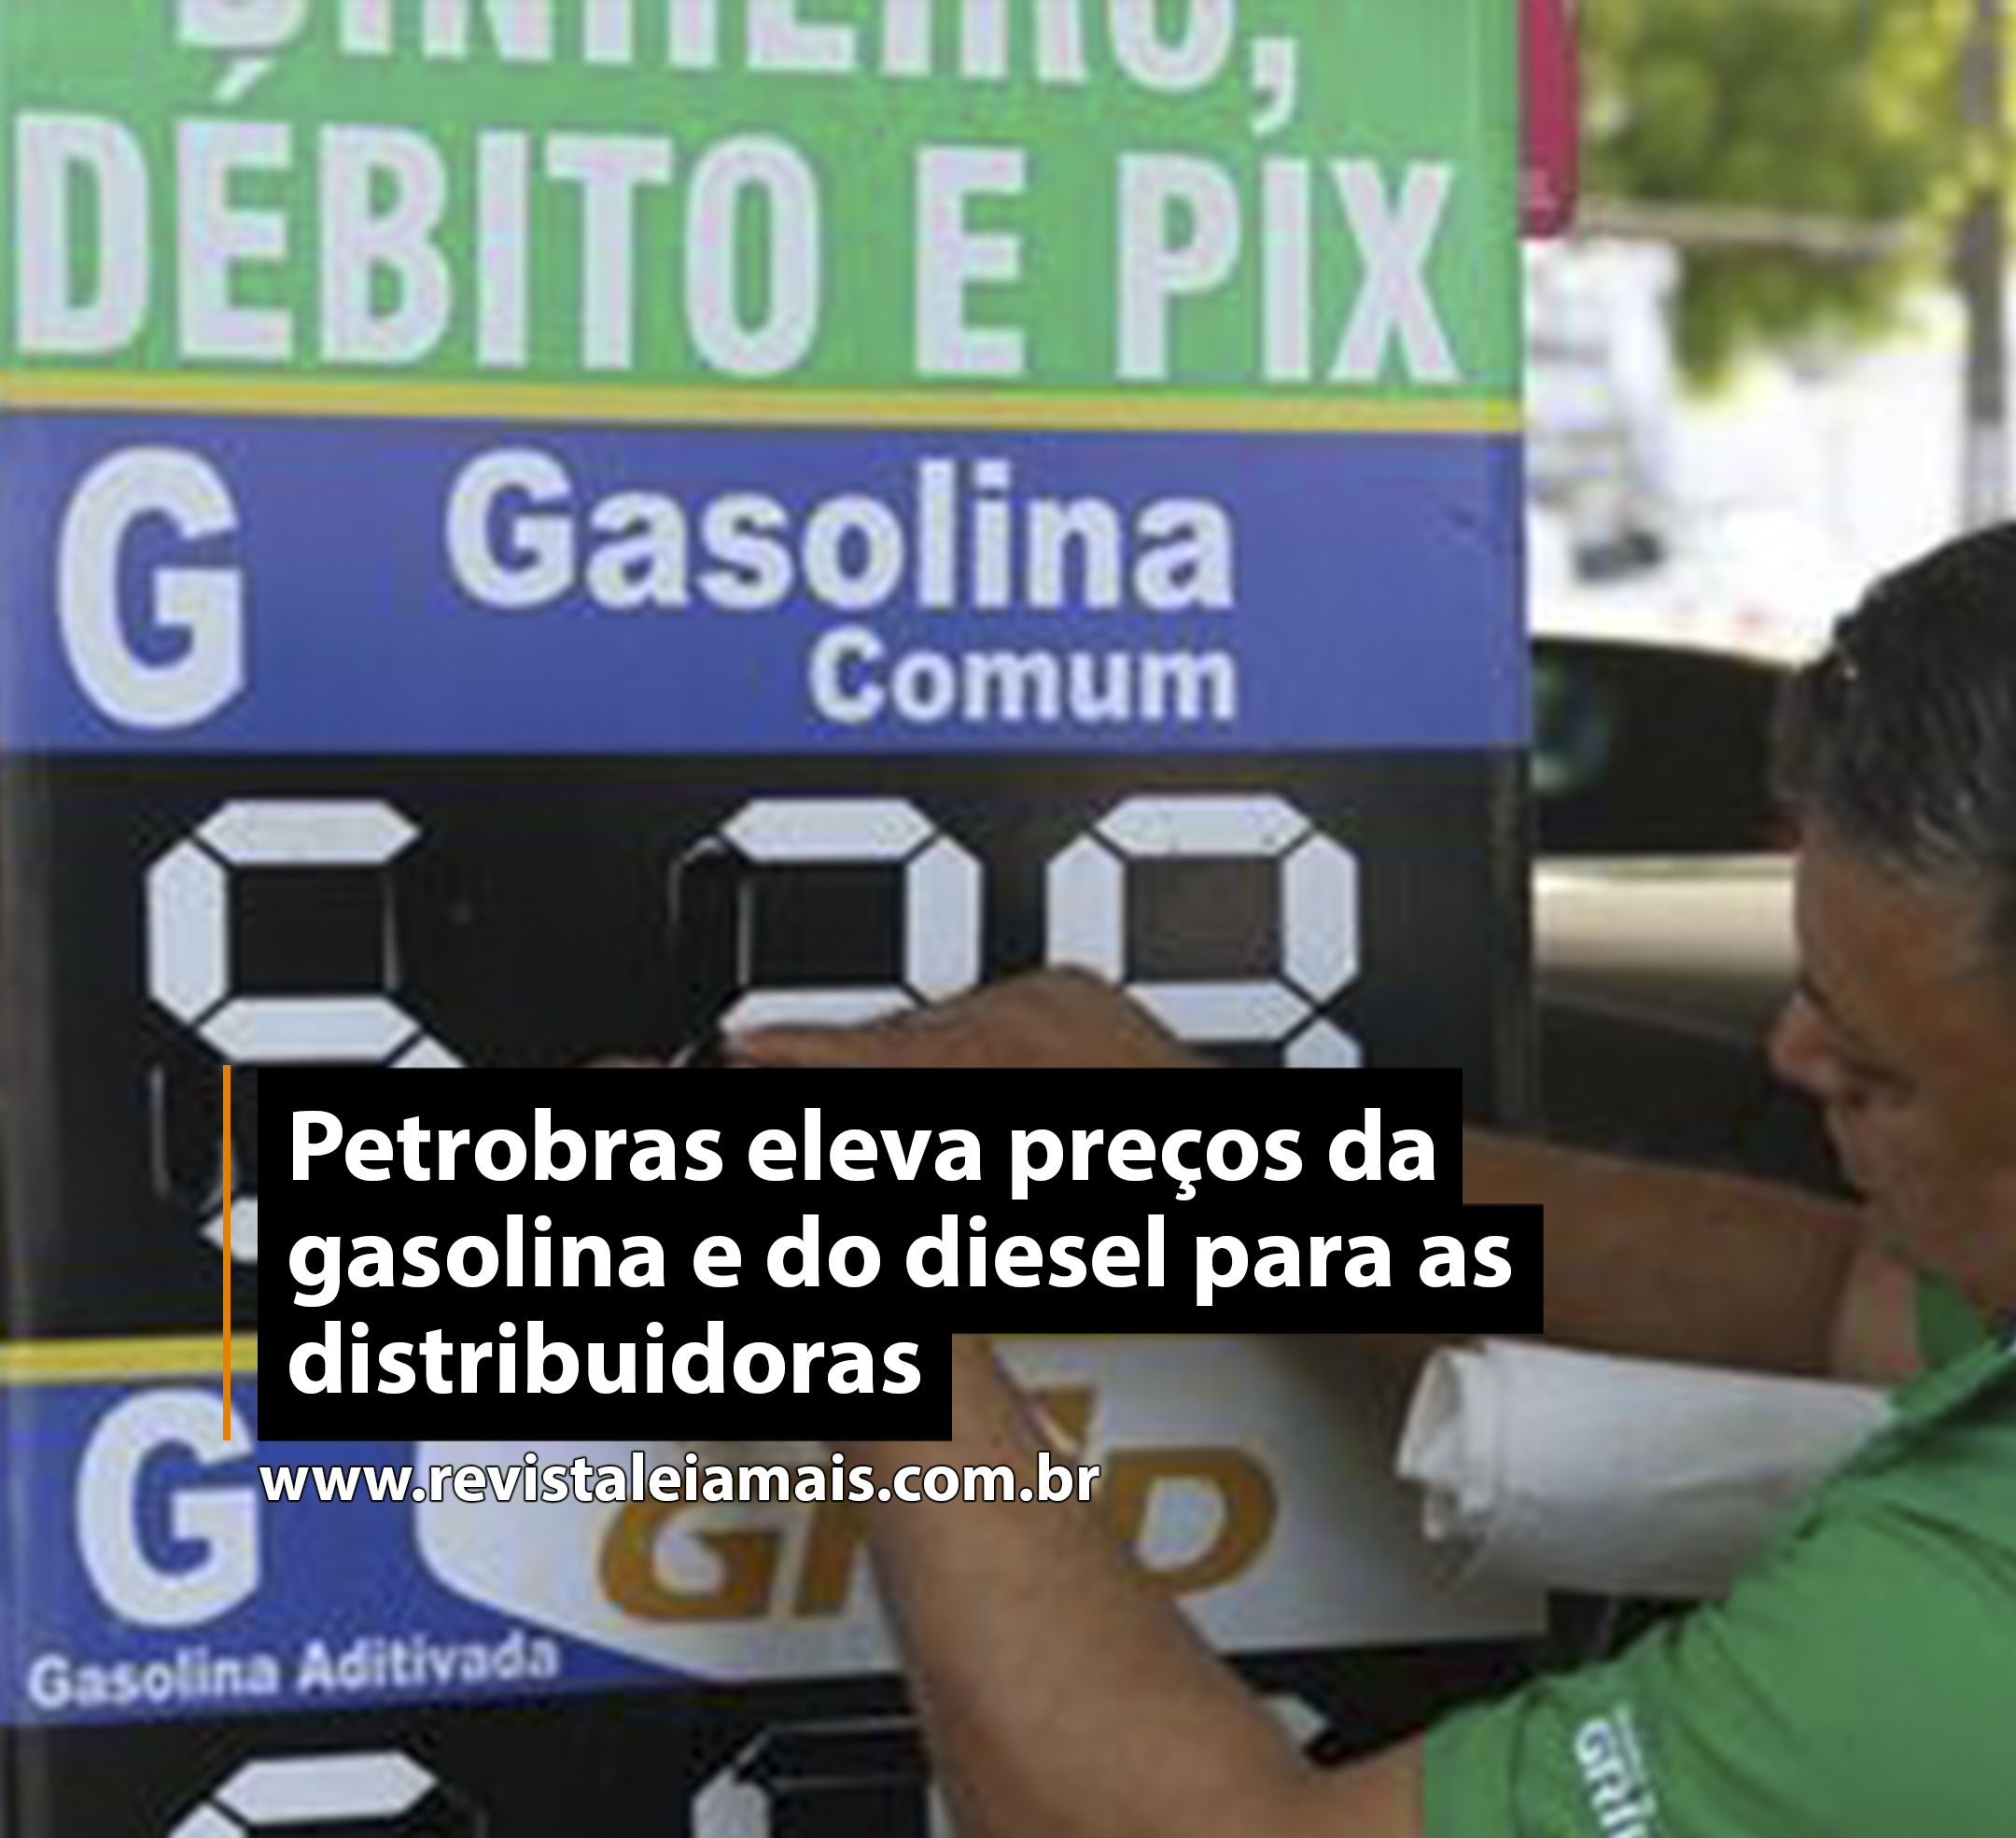 Petrobras eleva preços da gasolina e do diesel para as distribuidoras